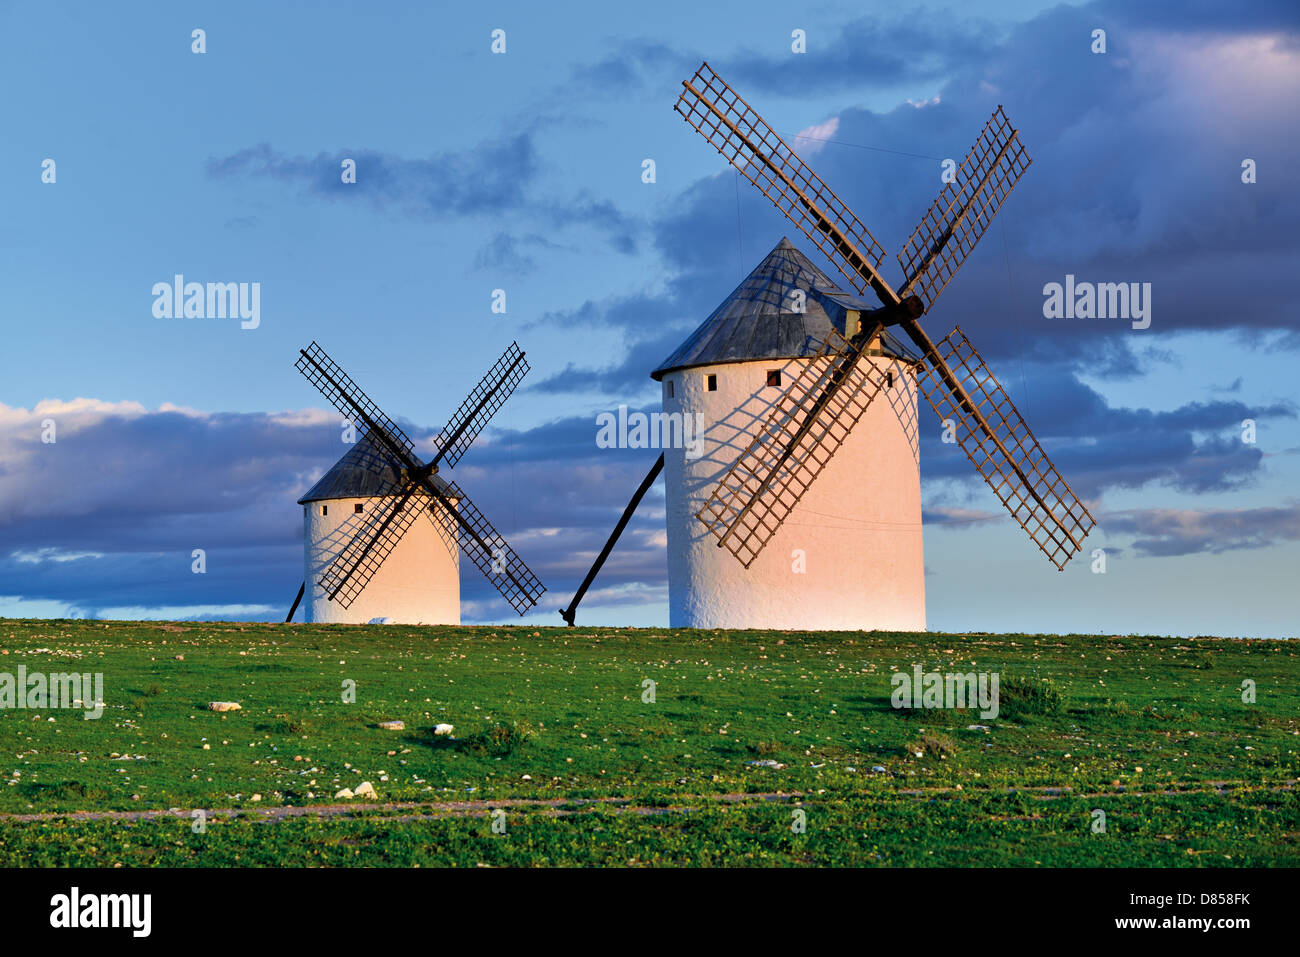 L'Espagne, Castille la Manche : vue panoramique de deux moulins à vent de Campo de Criptana Banque D'Images